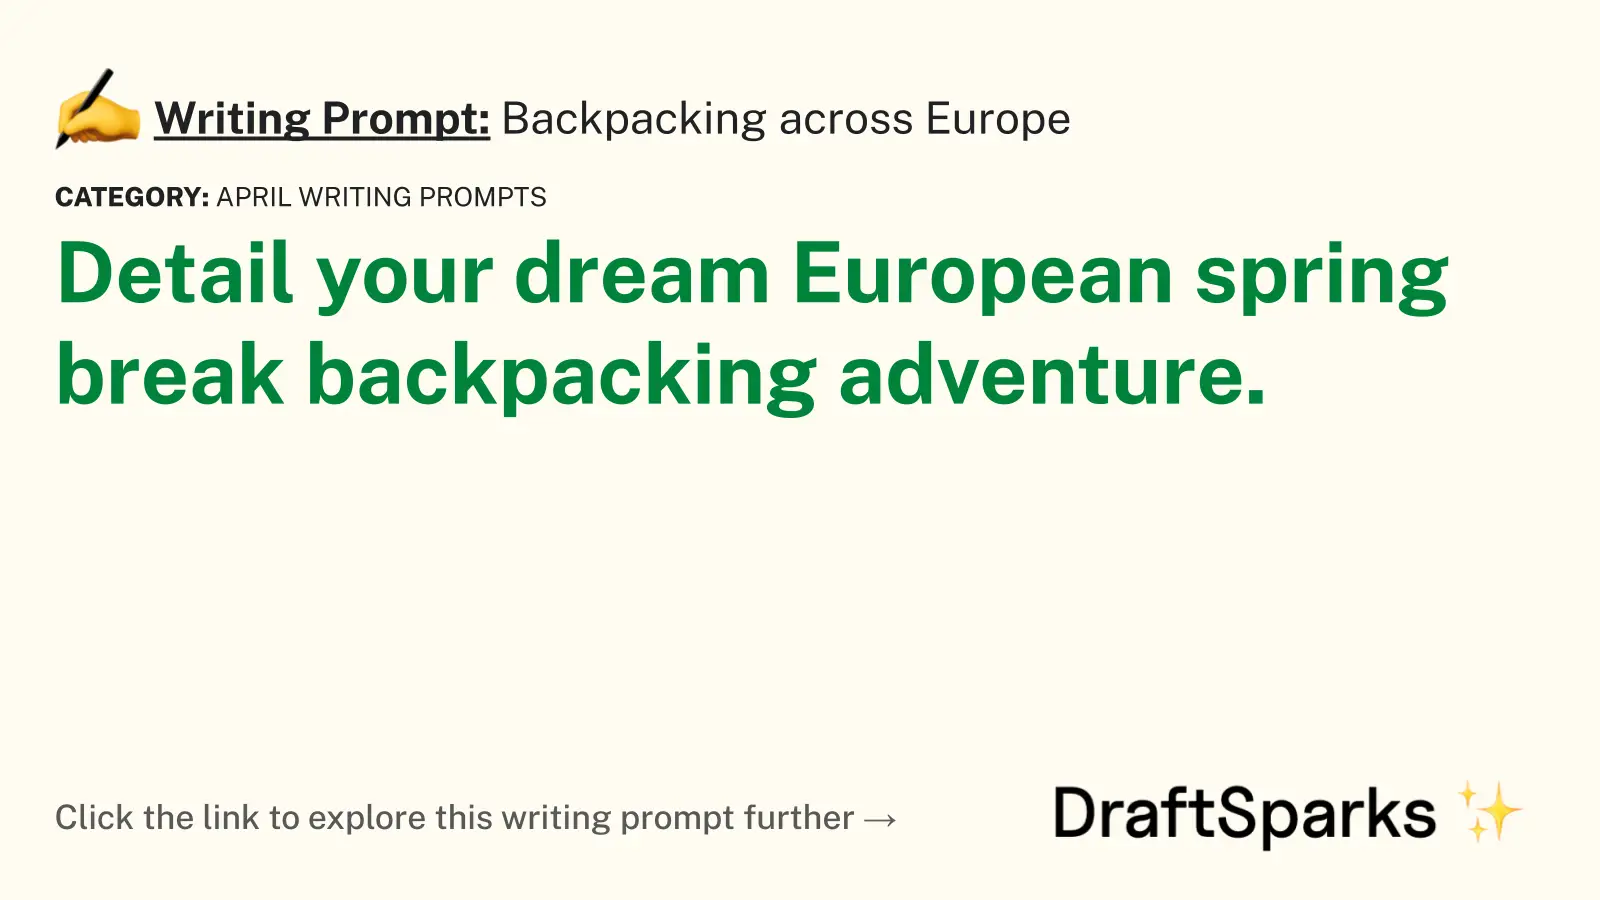 Backpacking across Europe